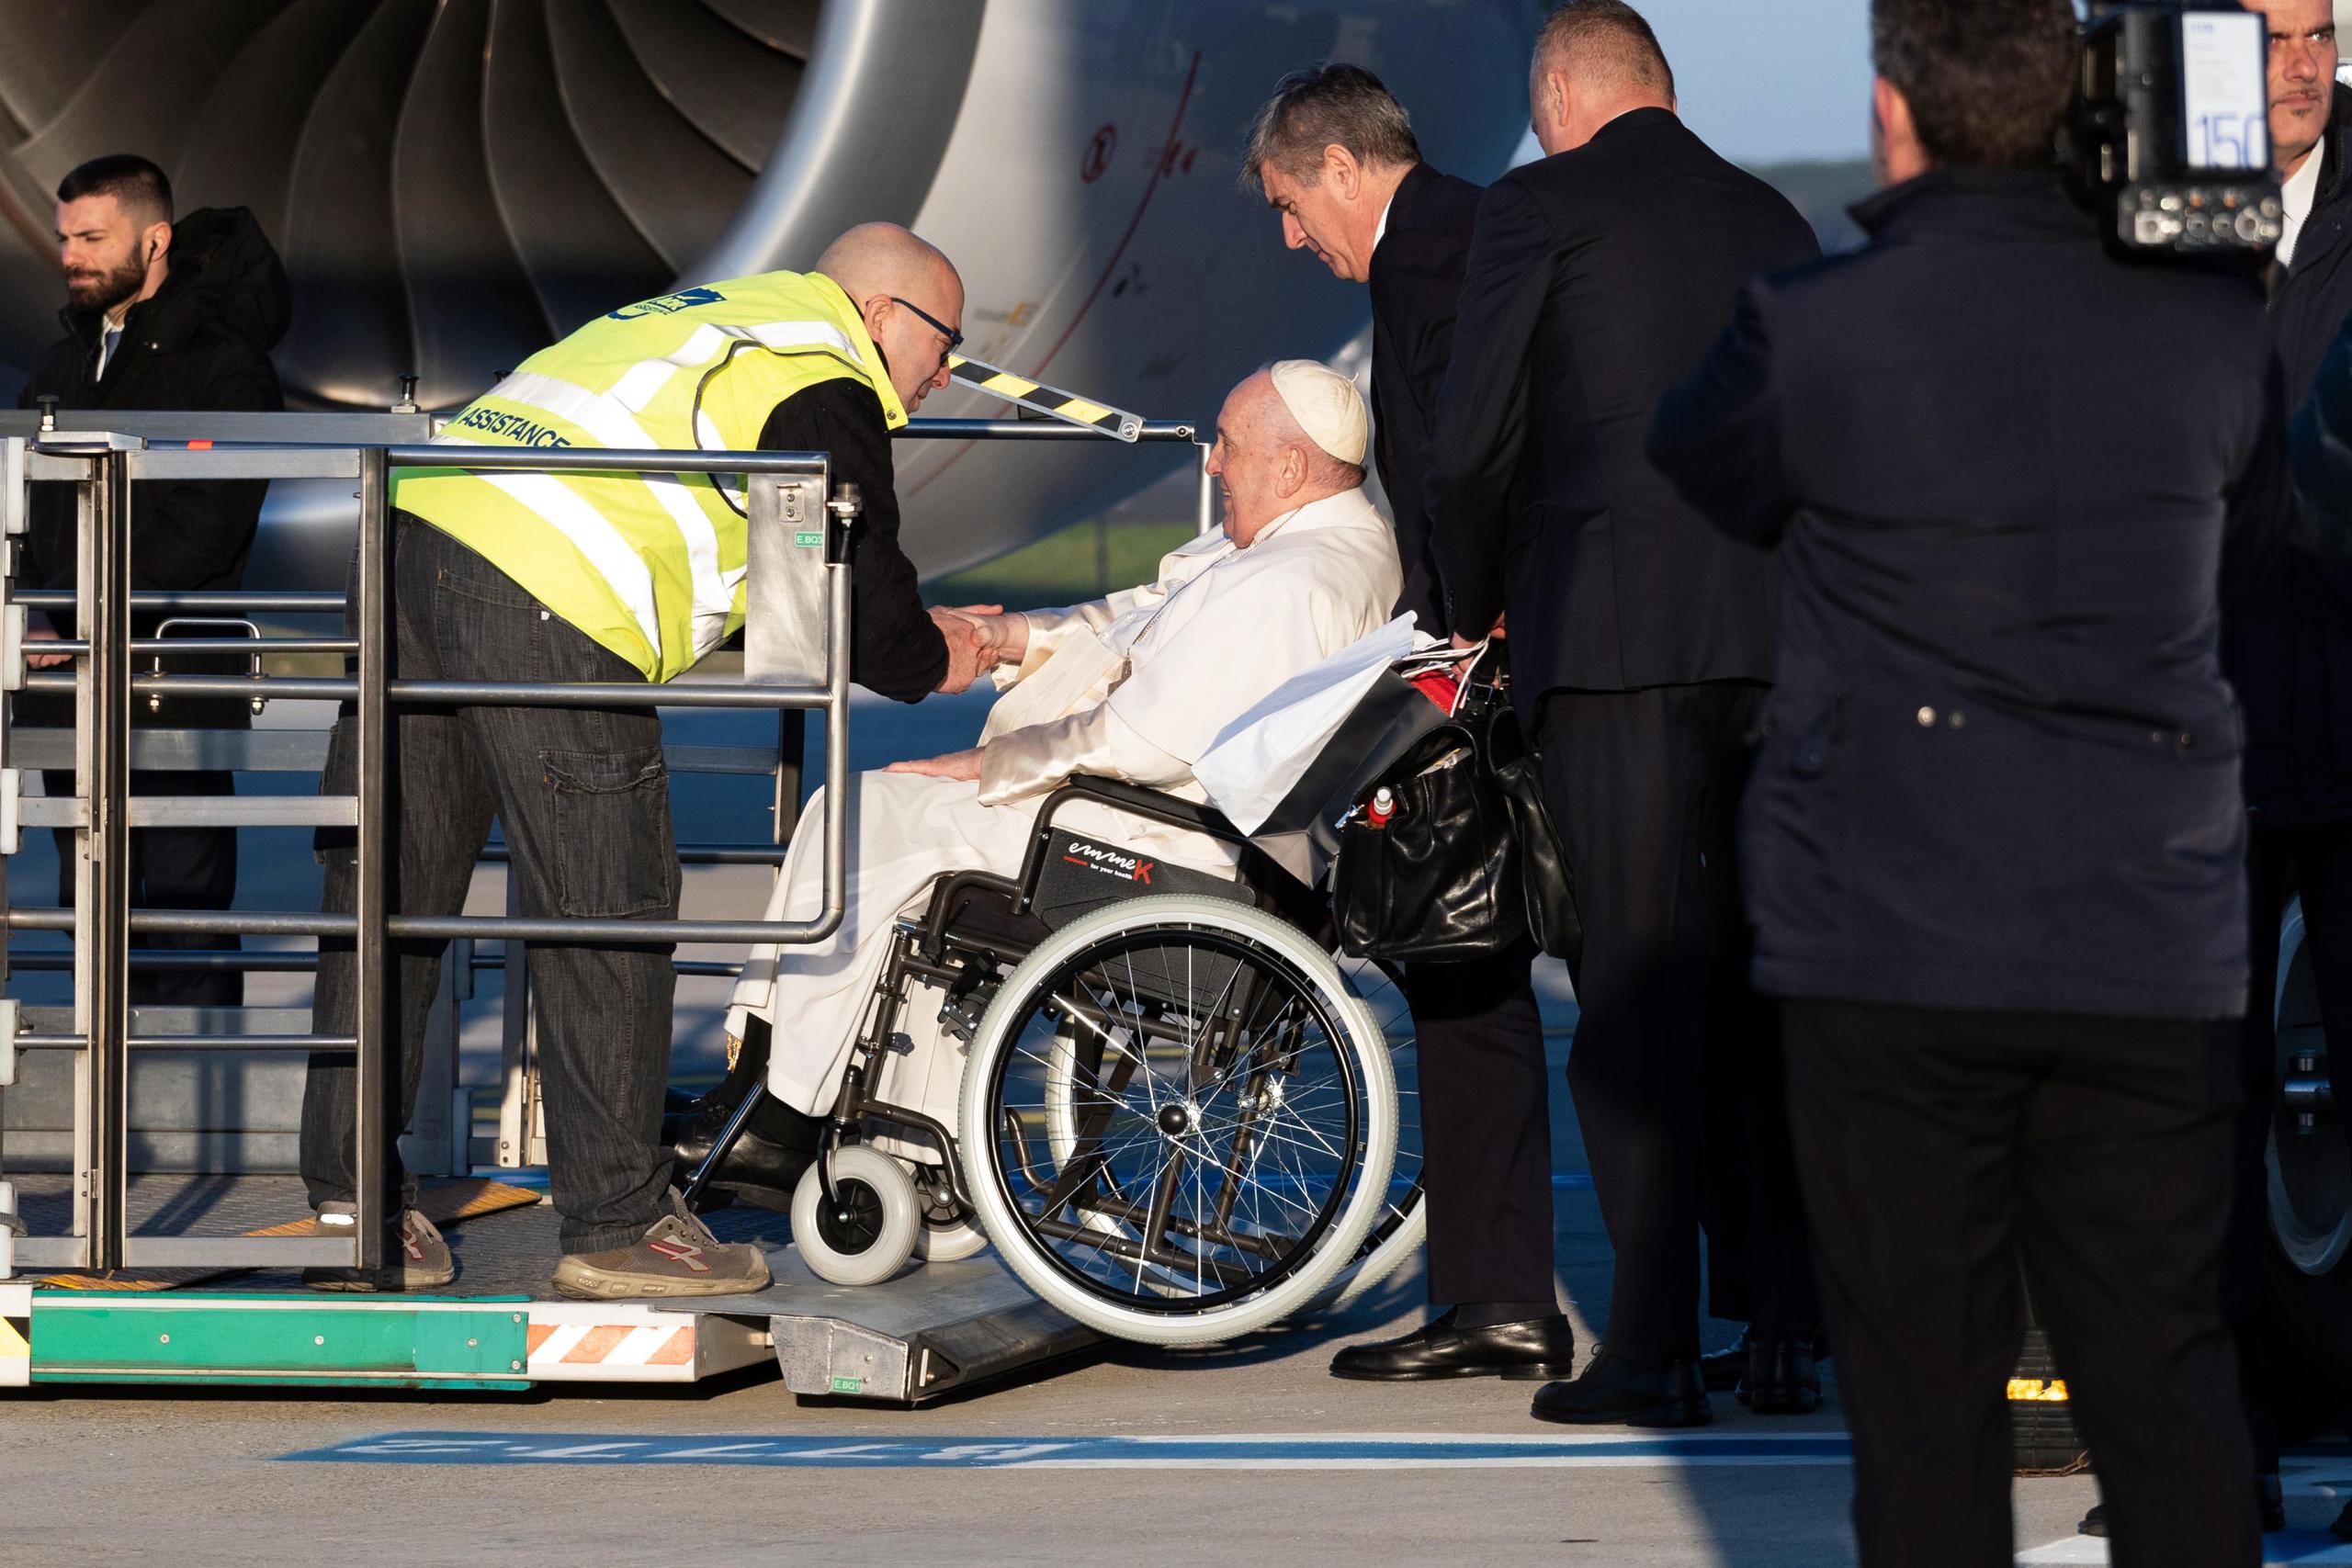 El Papa Francisco, sentado en una silla de ruedas, se prepara para abordar su avión en el aeropuerto de Roma Fiumicino rumbo a la República Democrática del Congo y Sudán del Sur este 31 de enero. EFE/EPA/TELENEWS
